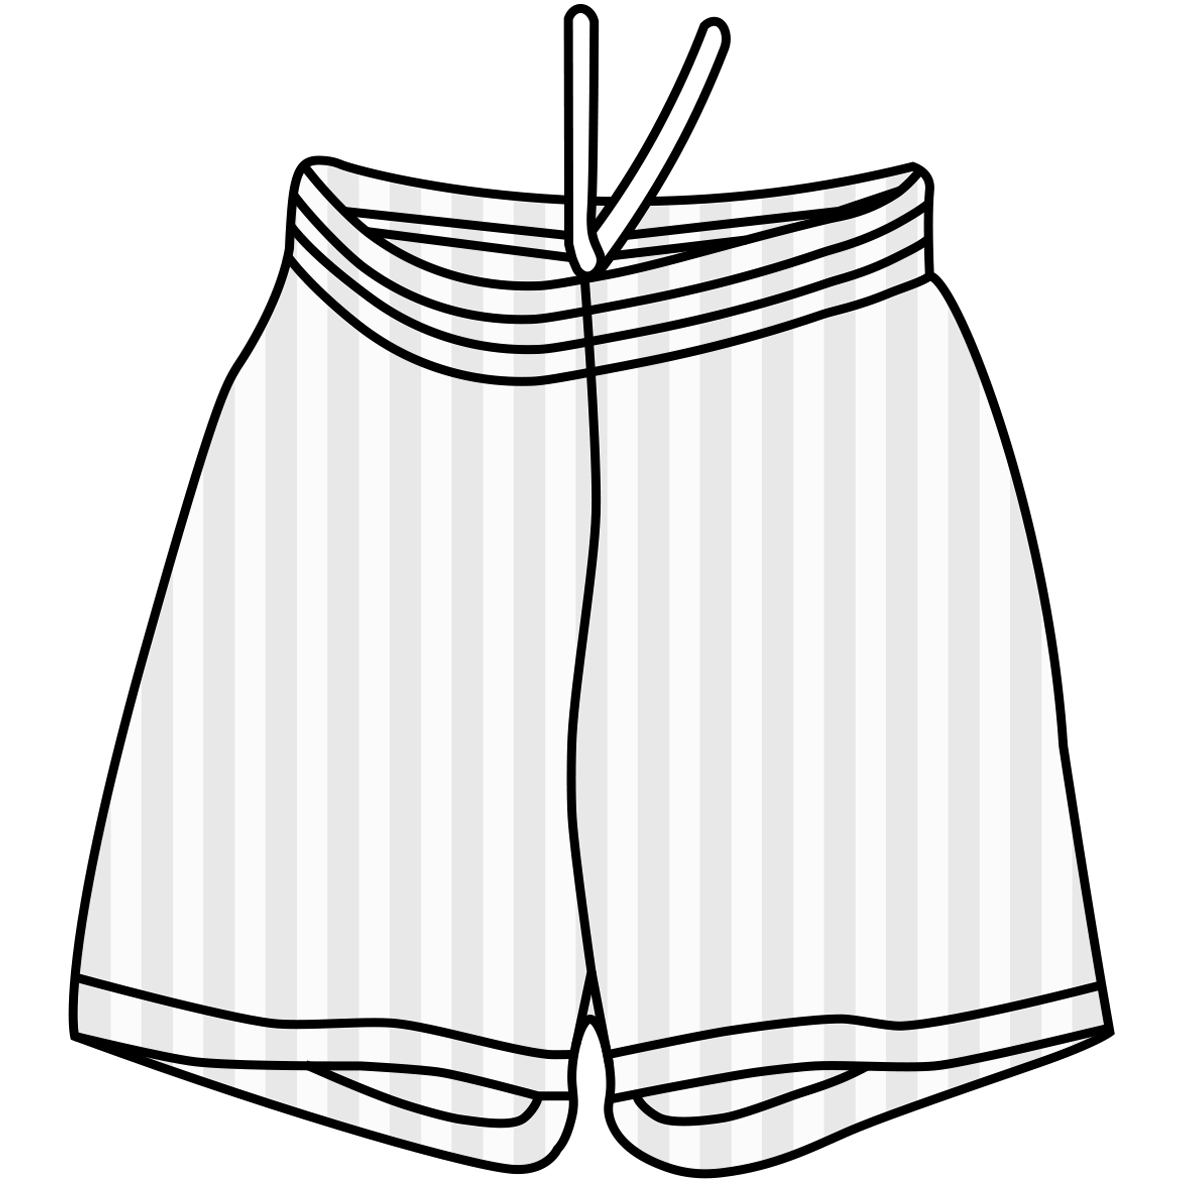 Shorts Drawing at GetDrawings | Free download